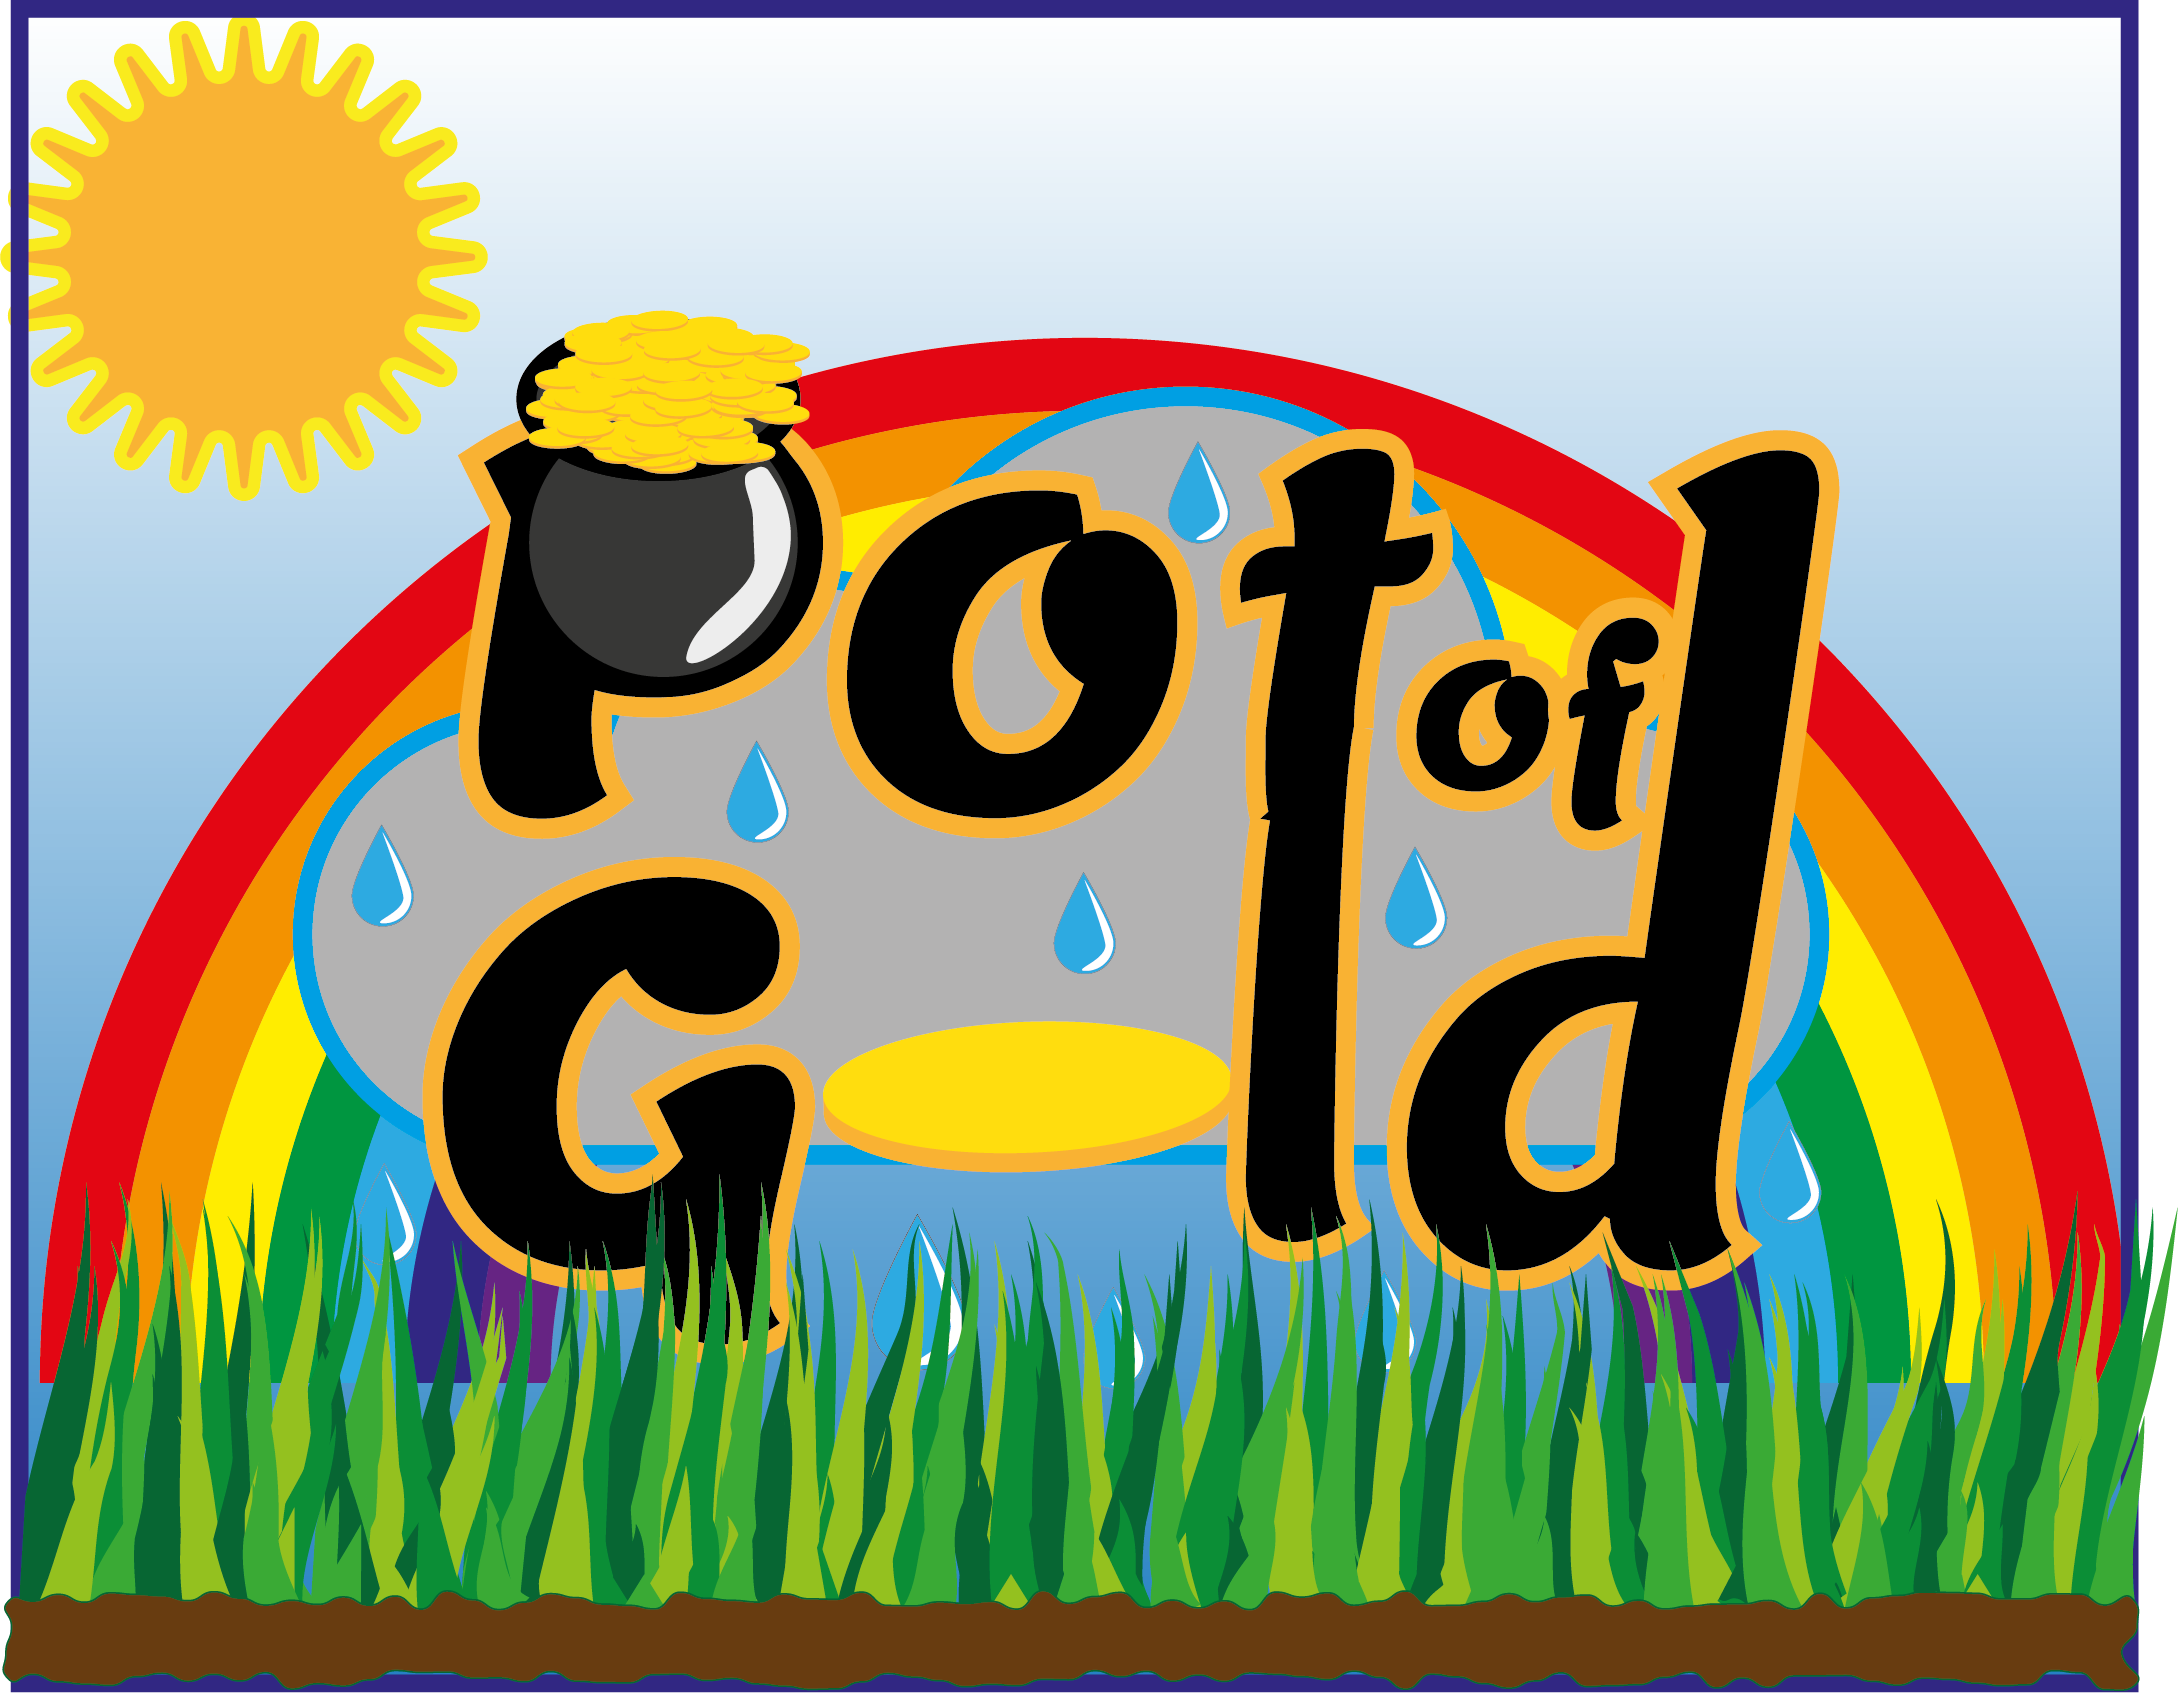 Pot of Gold2